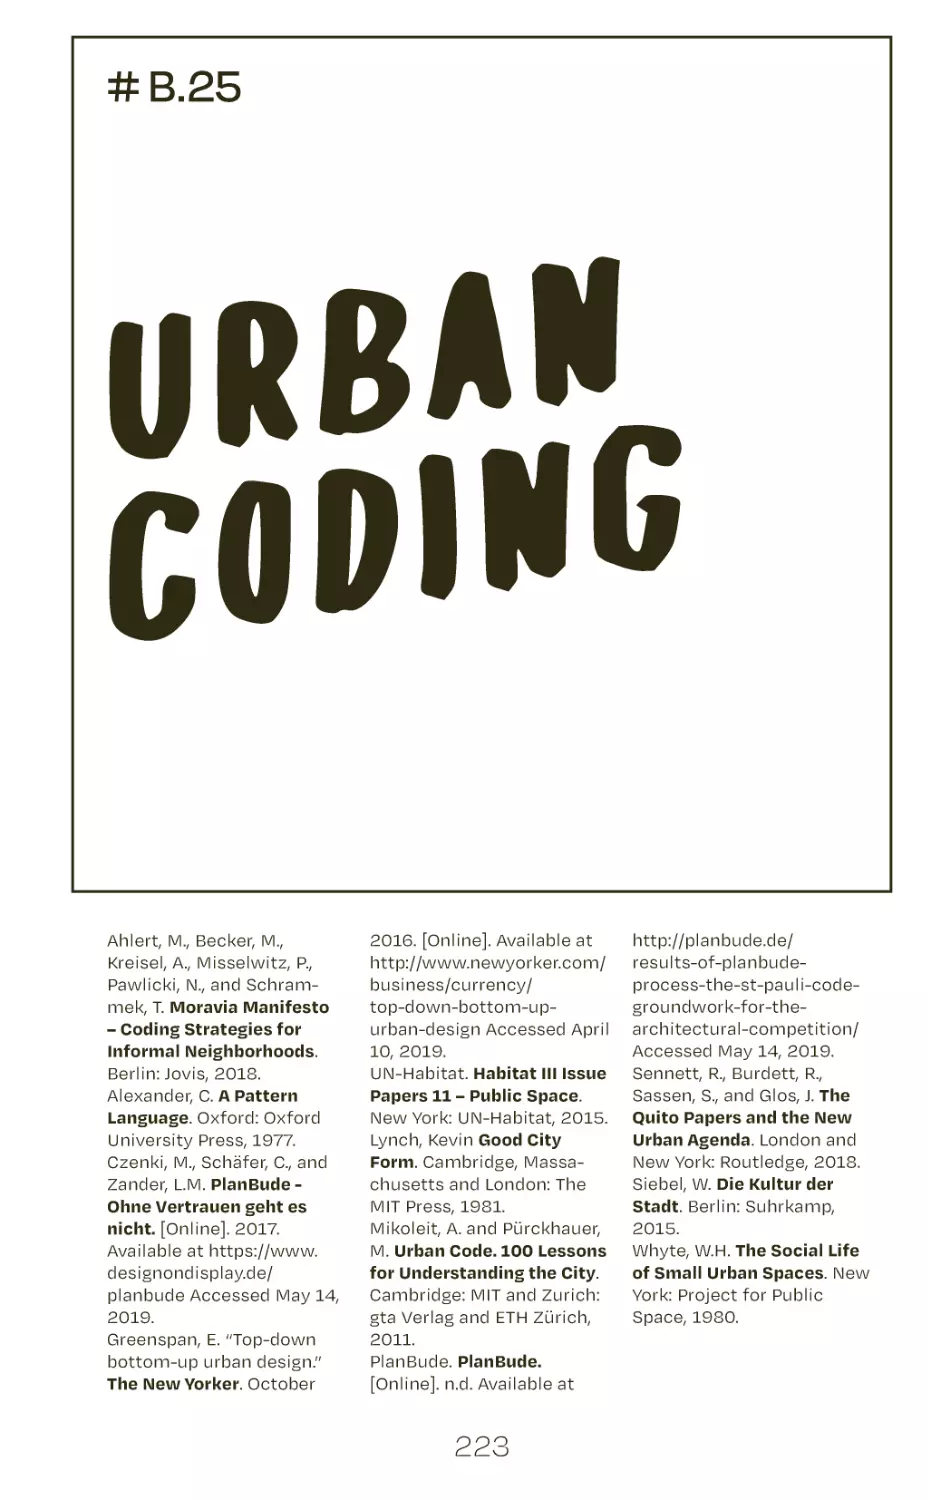 # B.25 urban coding